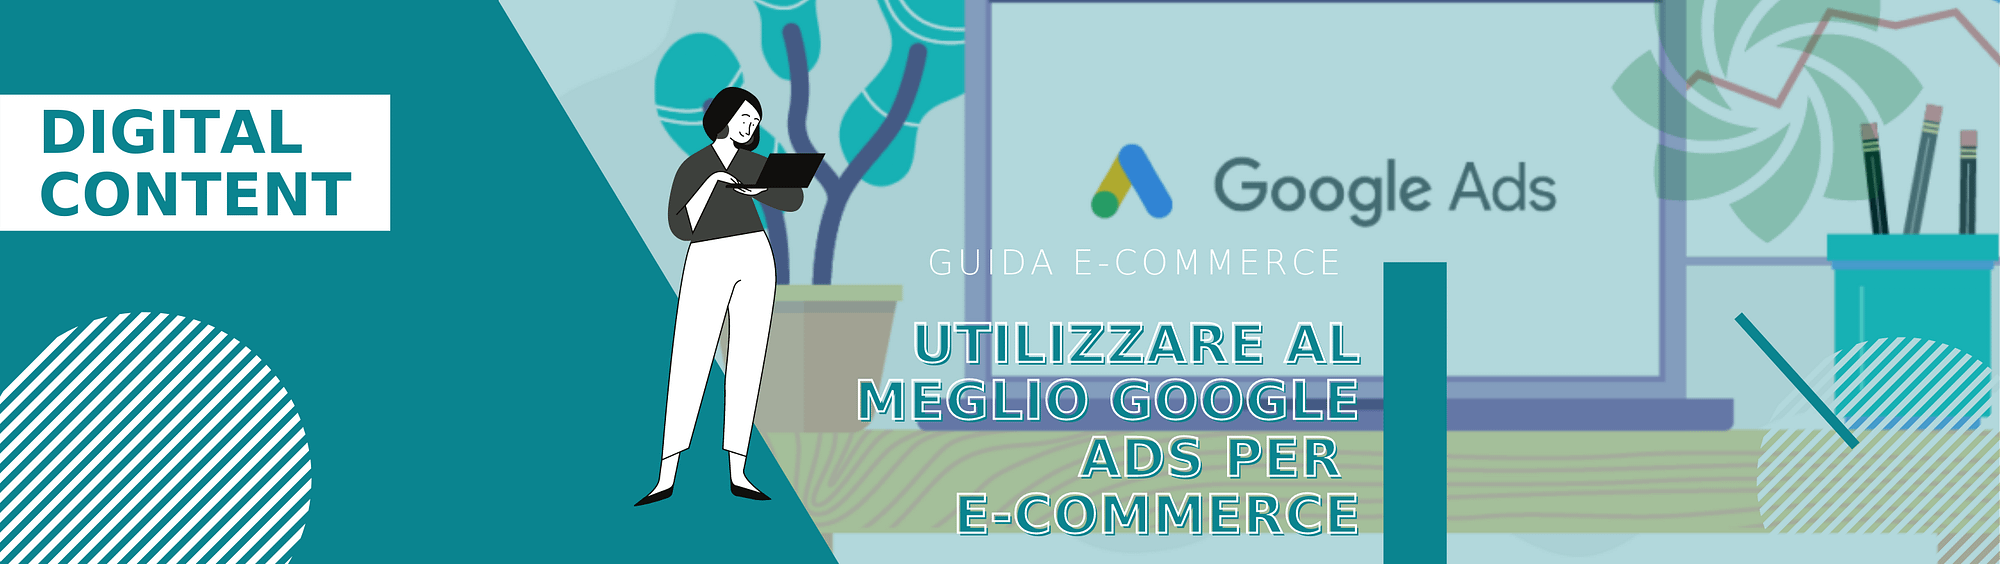 google-ads-ecommerce